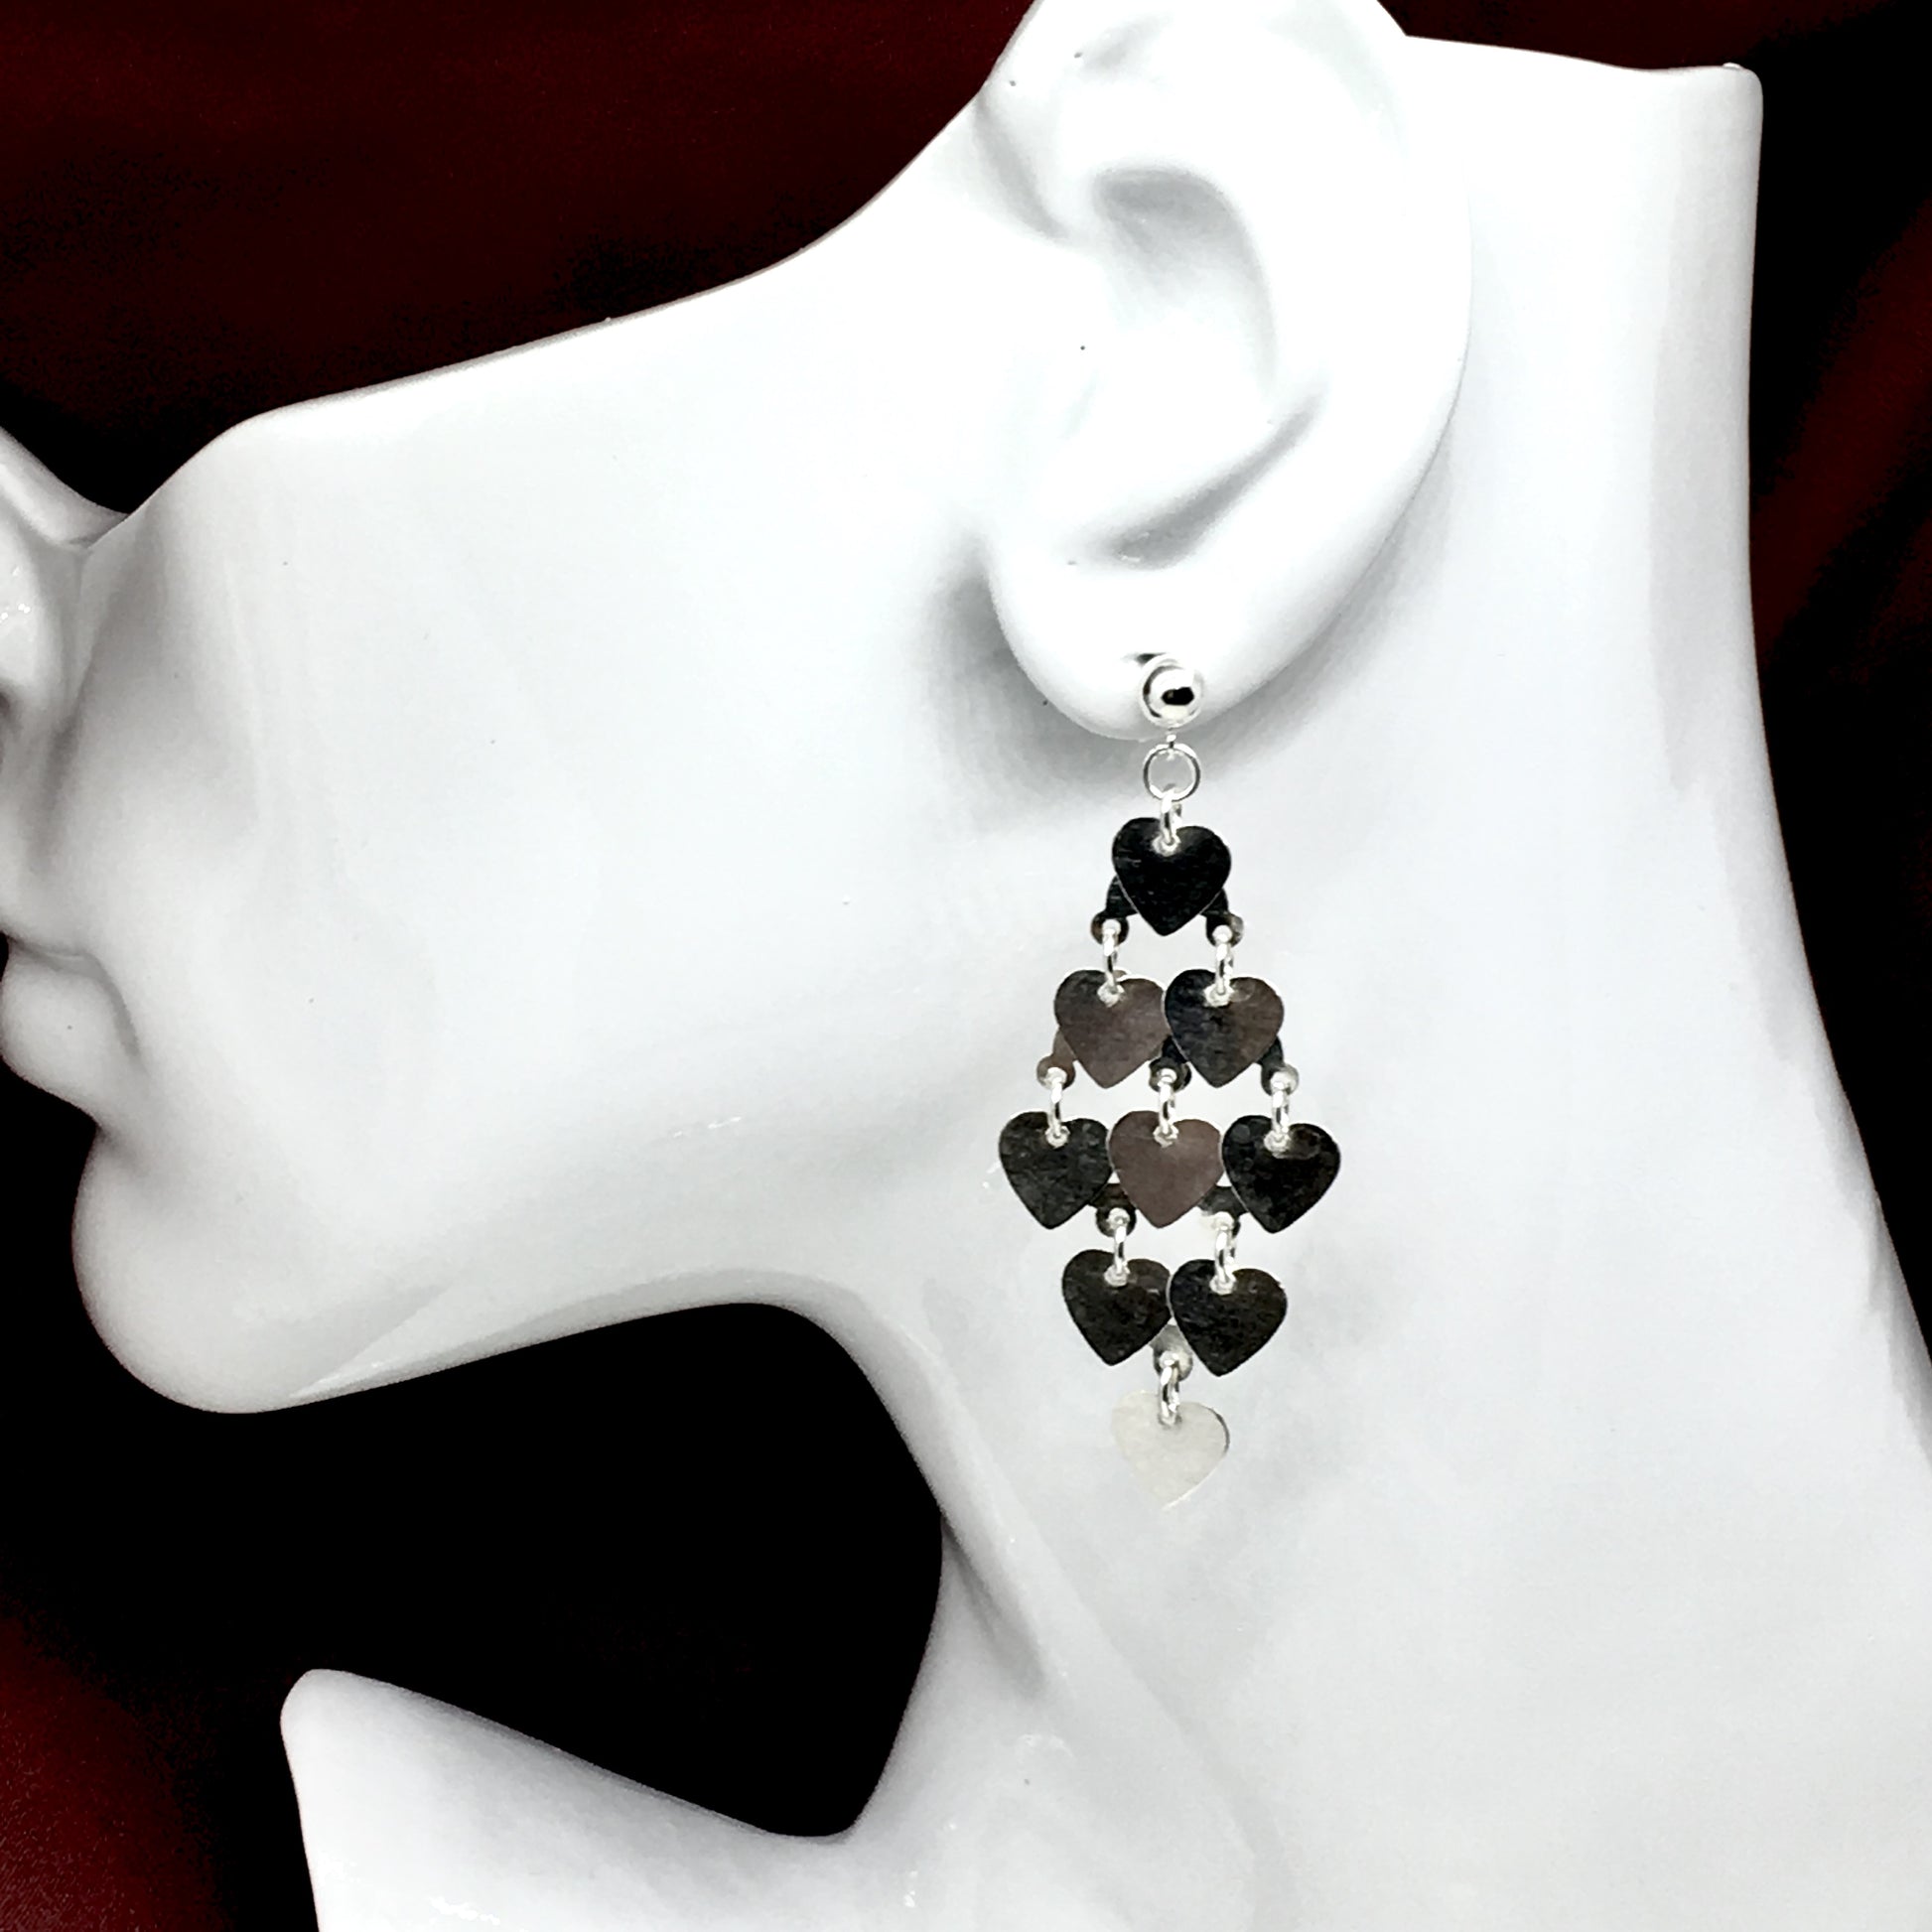 Dangle Earrings - Sterling Silver 2 3/8in Heart Waterfall Chandelier Earrings - Womens Fancy Long Waterfall Style Earrings